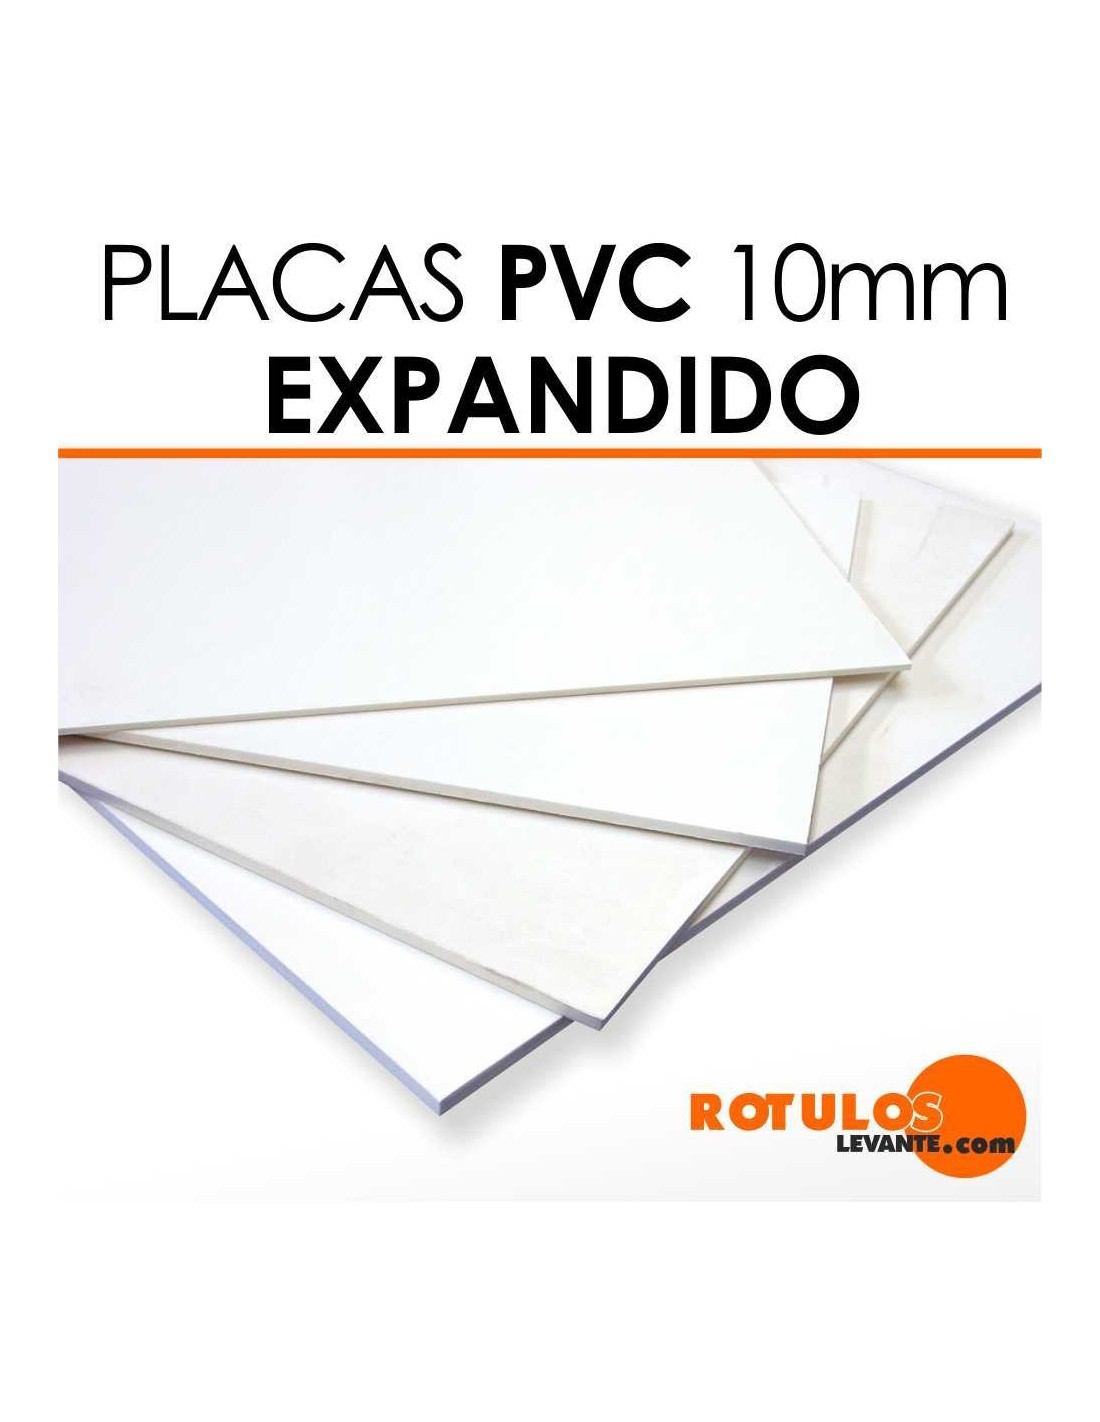 Placa de PVC expandido 10mm